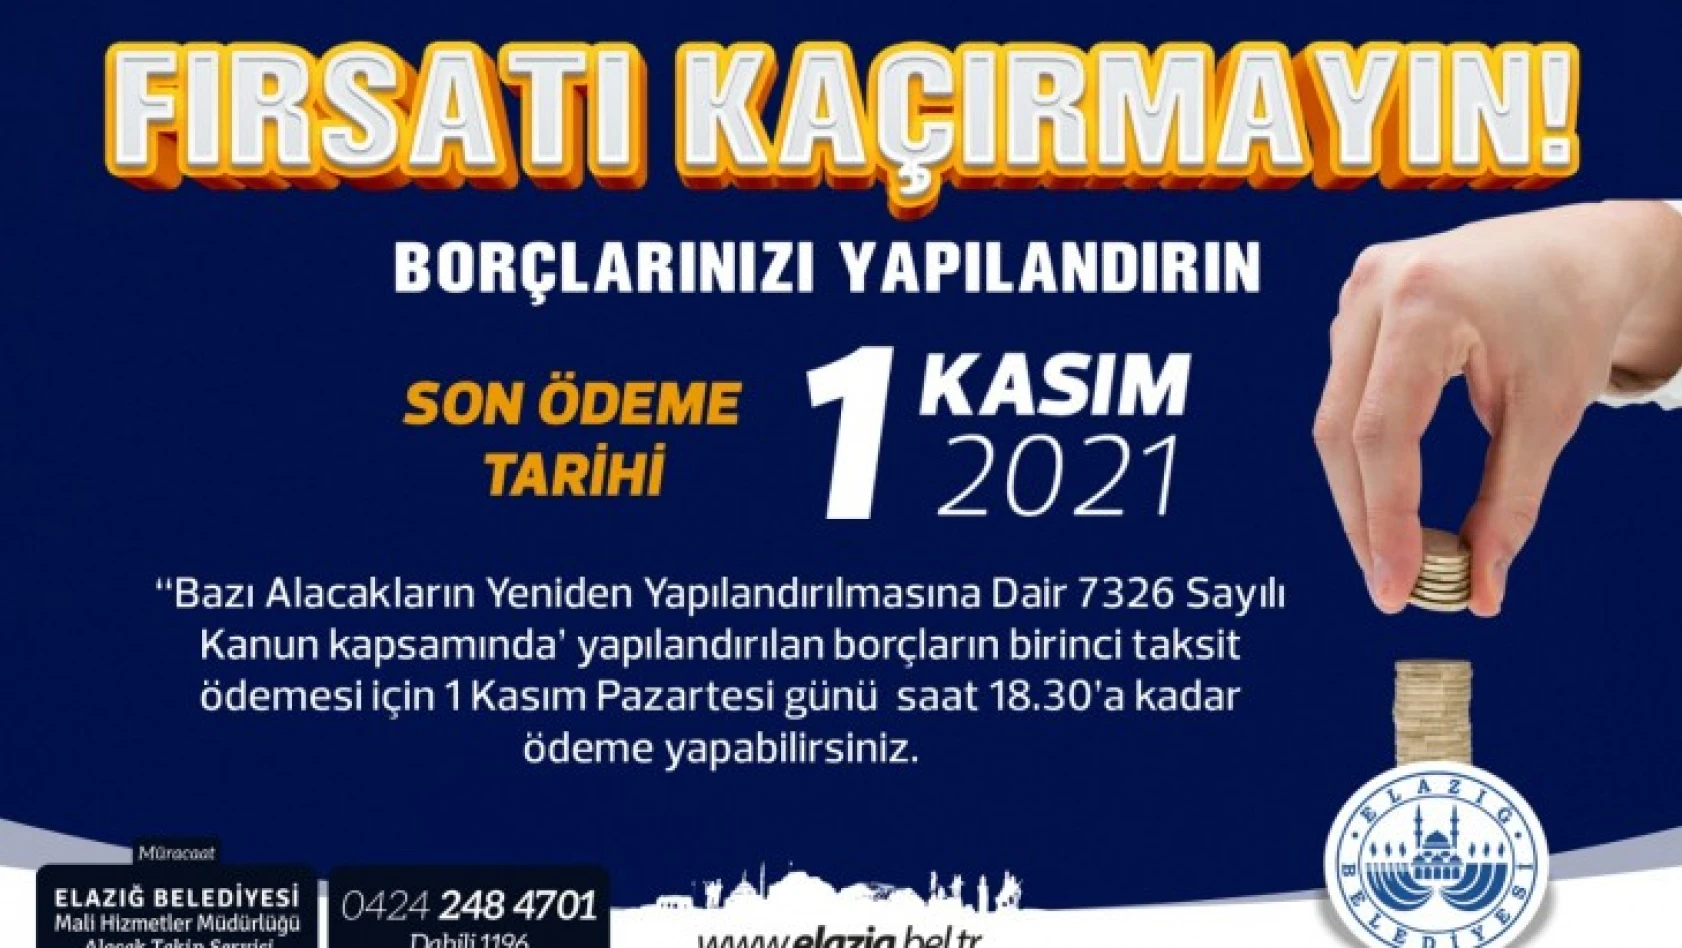 Elazığ Belediyesi'nden Duyuru Yapılandırma İlk Taksit Ödemesinde Son Tarih 1 Kasım